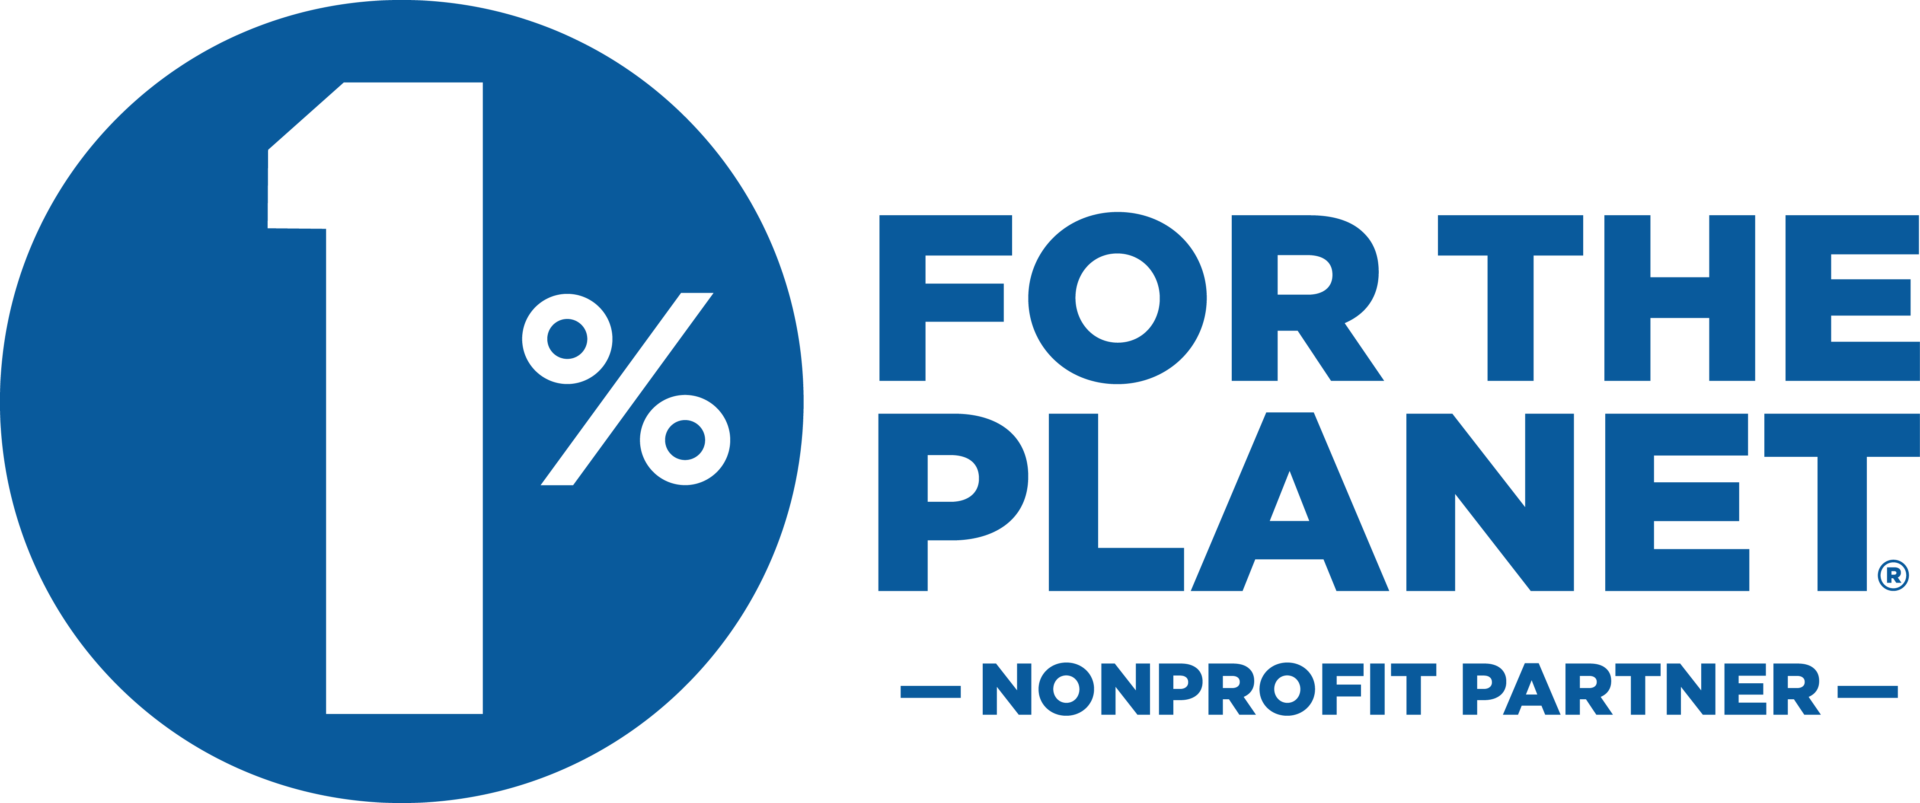 Logotipo del 1% para el planeta